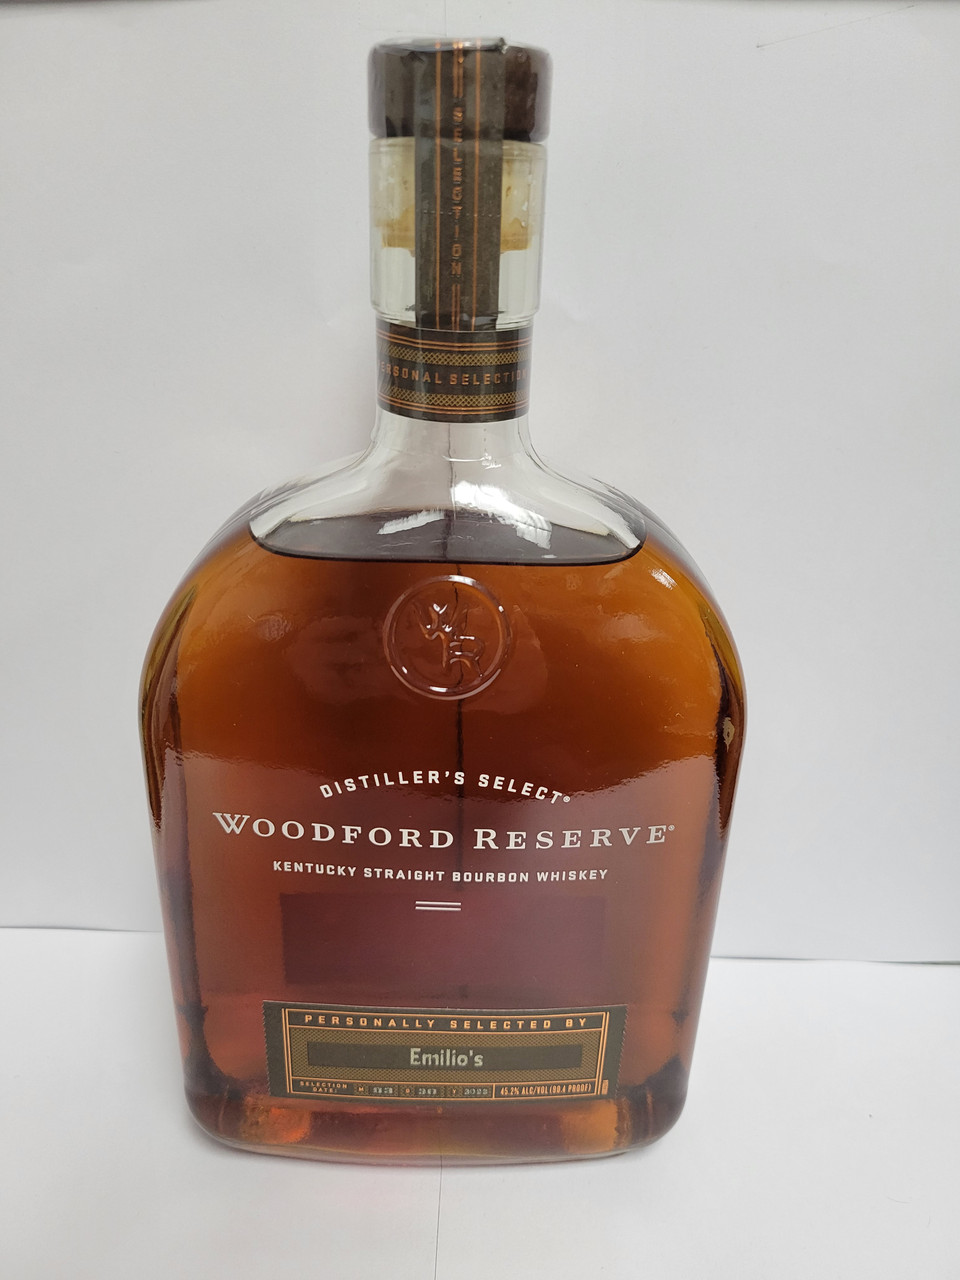 Woodford Reserve Bourbon Bourbon, Kentucky Straight Bourbon Whiskey - 1.75 lt